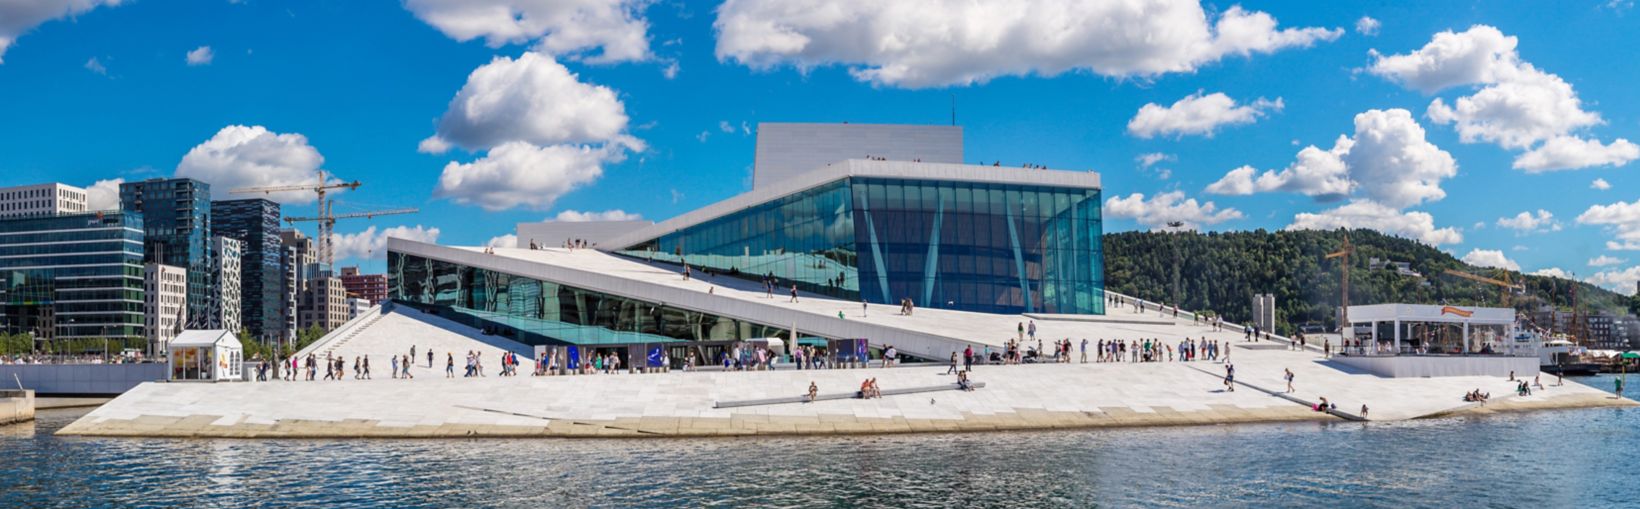 OSLO, NORJA - HEINÄKUU 29: Oslon oopperatalo on Norjan kansallisoopperan ja -baletin koti ja Norjan kansallisoopperateatteri Oslossa, Norjassa 29.7.2014